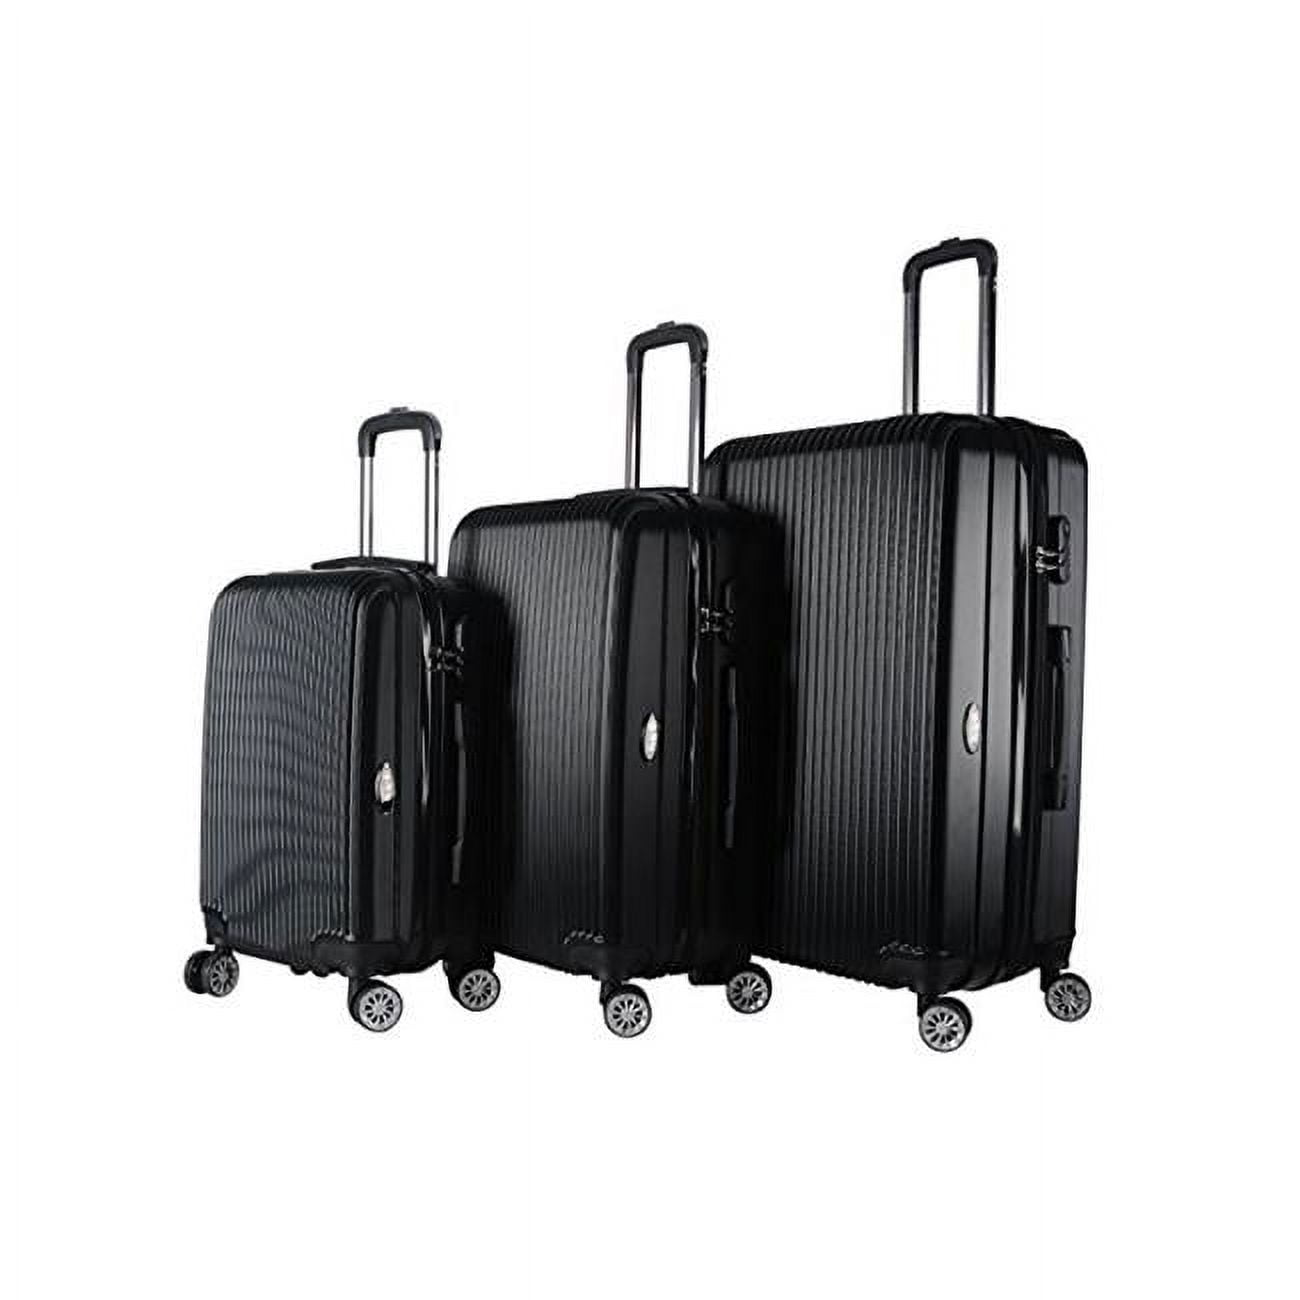 1310-Black Hardside Spinner Luggage Set - Walmart.com